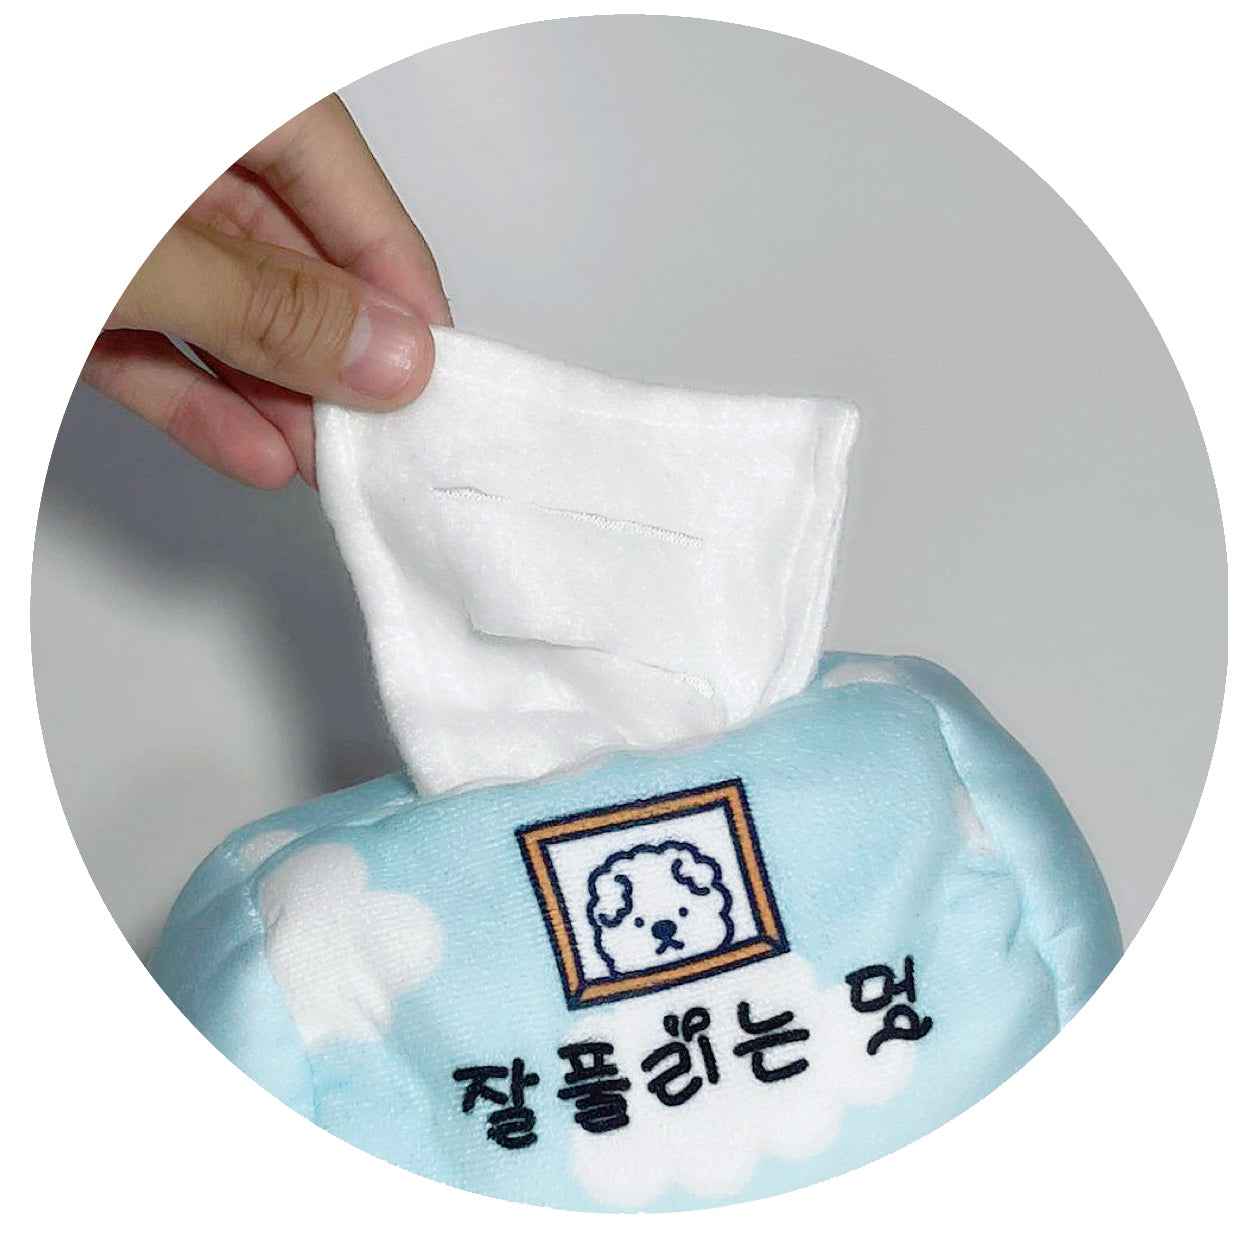 香港獨家 韓國聞嗅紙巾玩具 Tissue Box